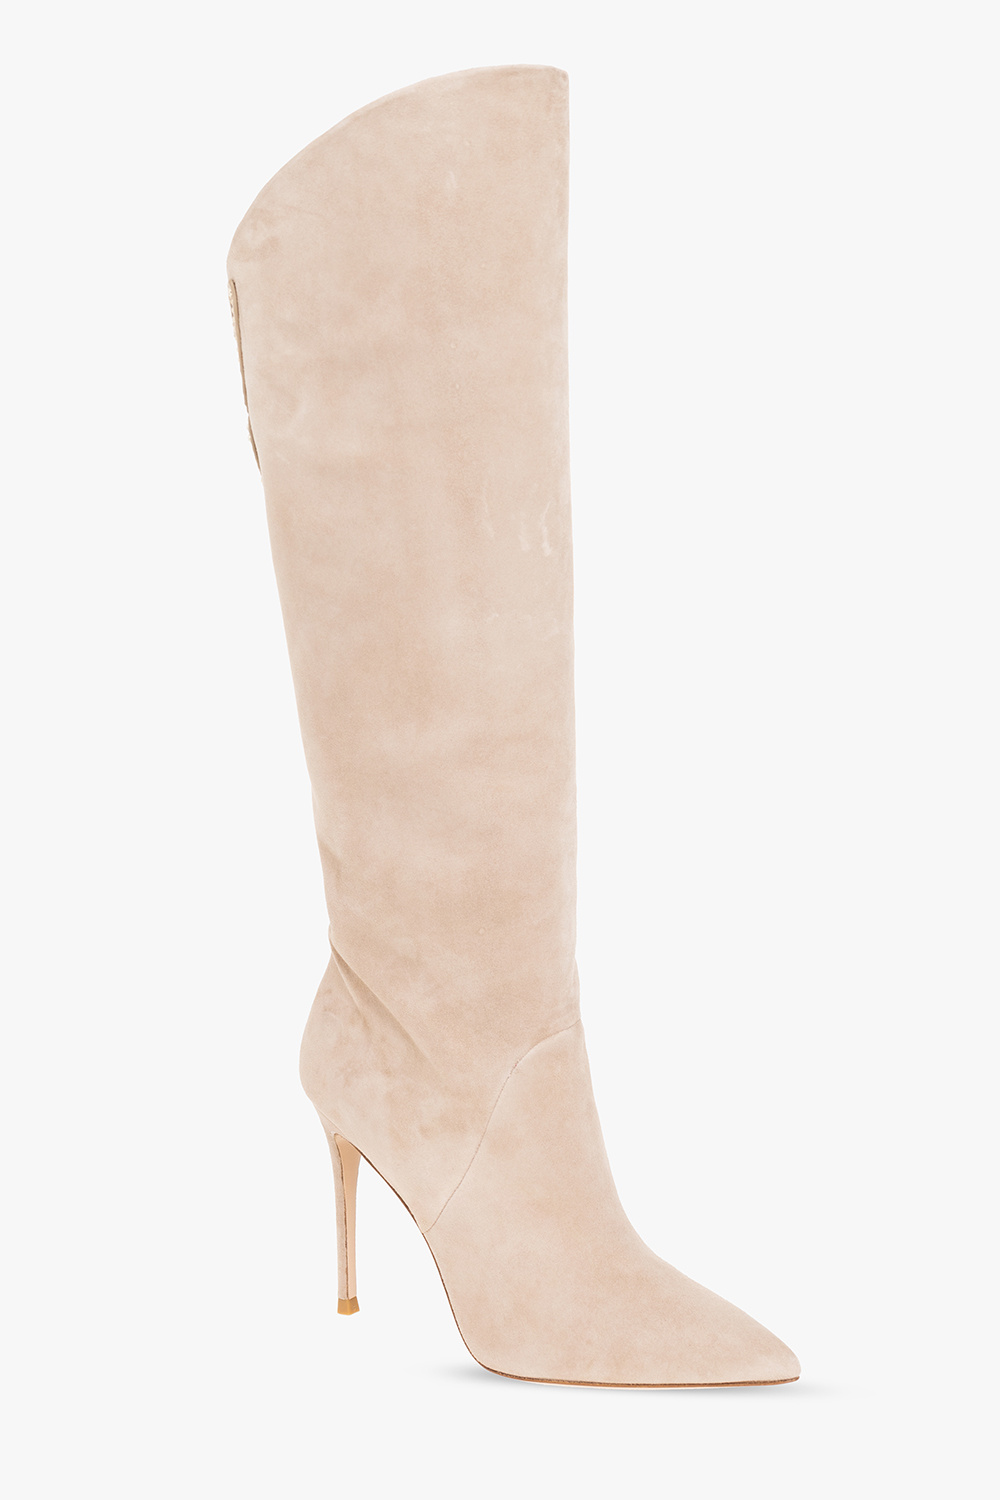 Sophia Webster ‘Asha’ heeled knee-high boots